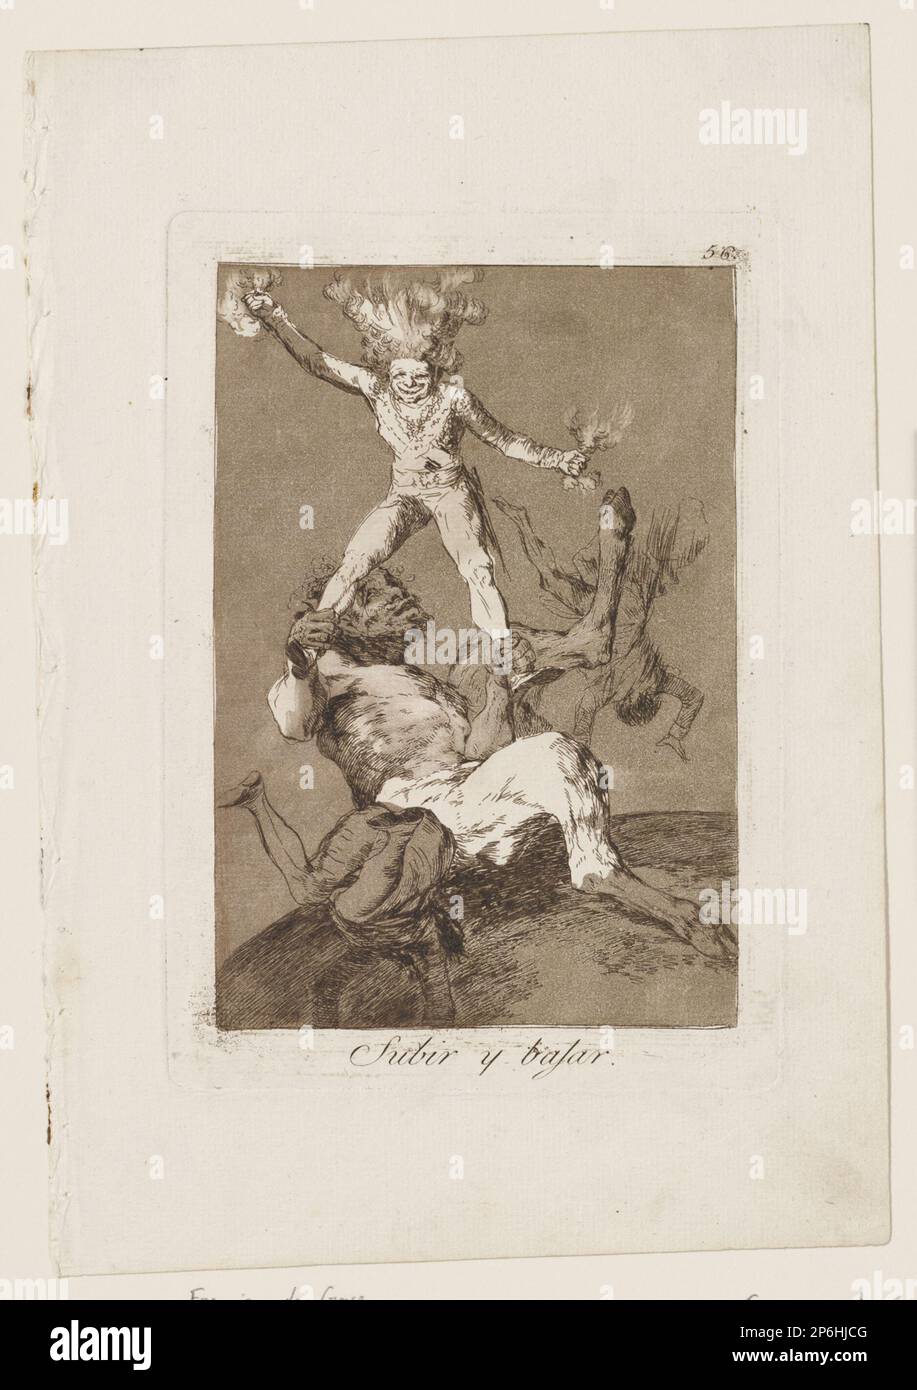 Francisco de Goya y Lucientes, Subir y Bahar, 1799, aguafuerte y aguatinta sobre papel. Foto de stock